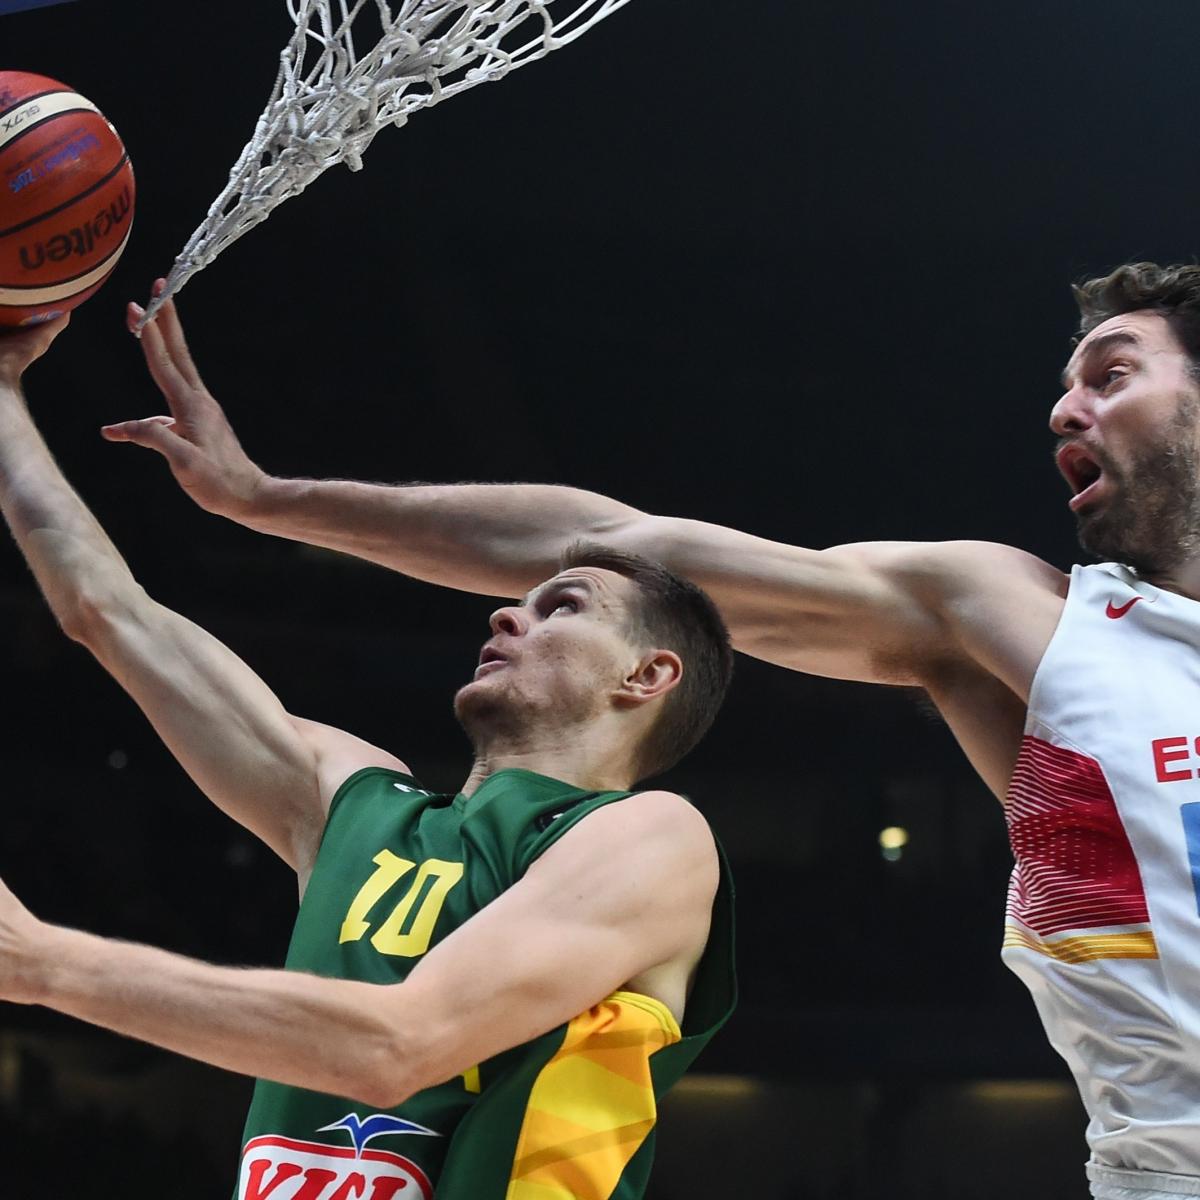 Boban Marjanovic, Basketball Player, News, Stats - Eurobasket